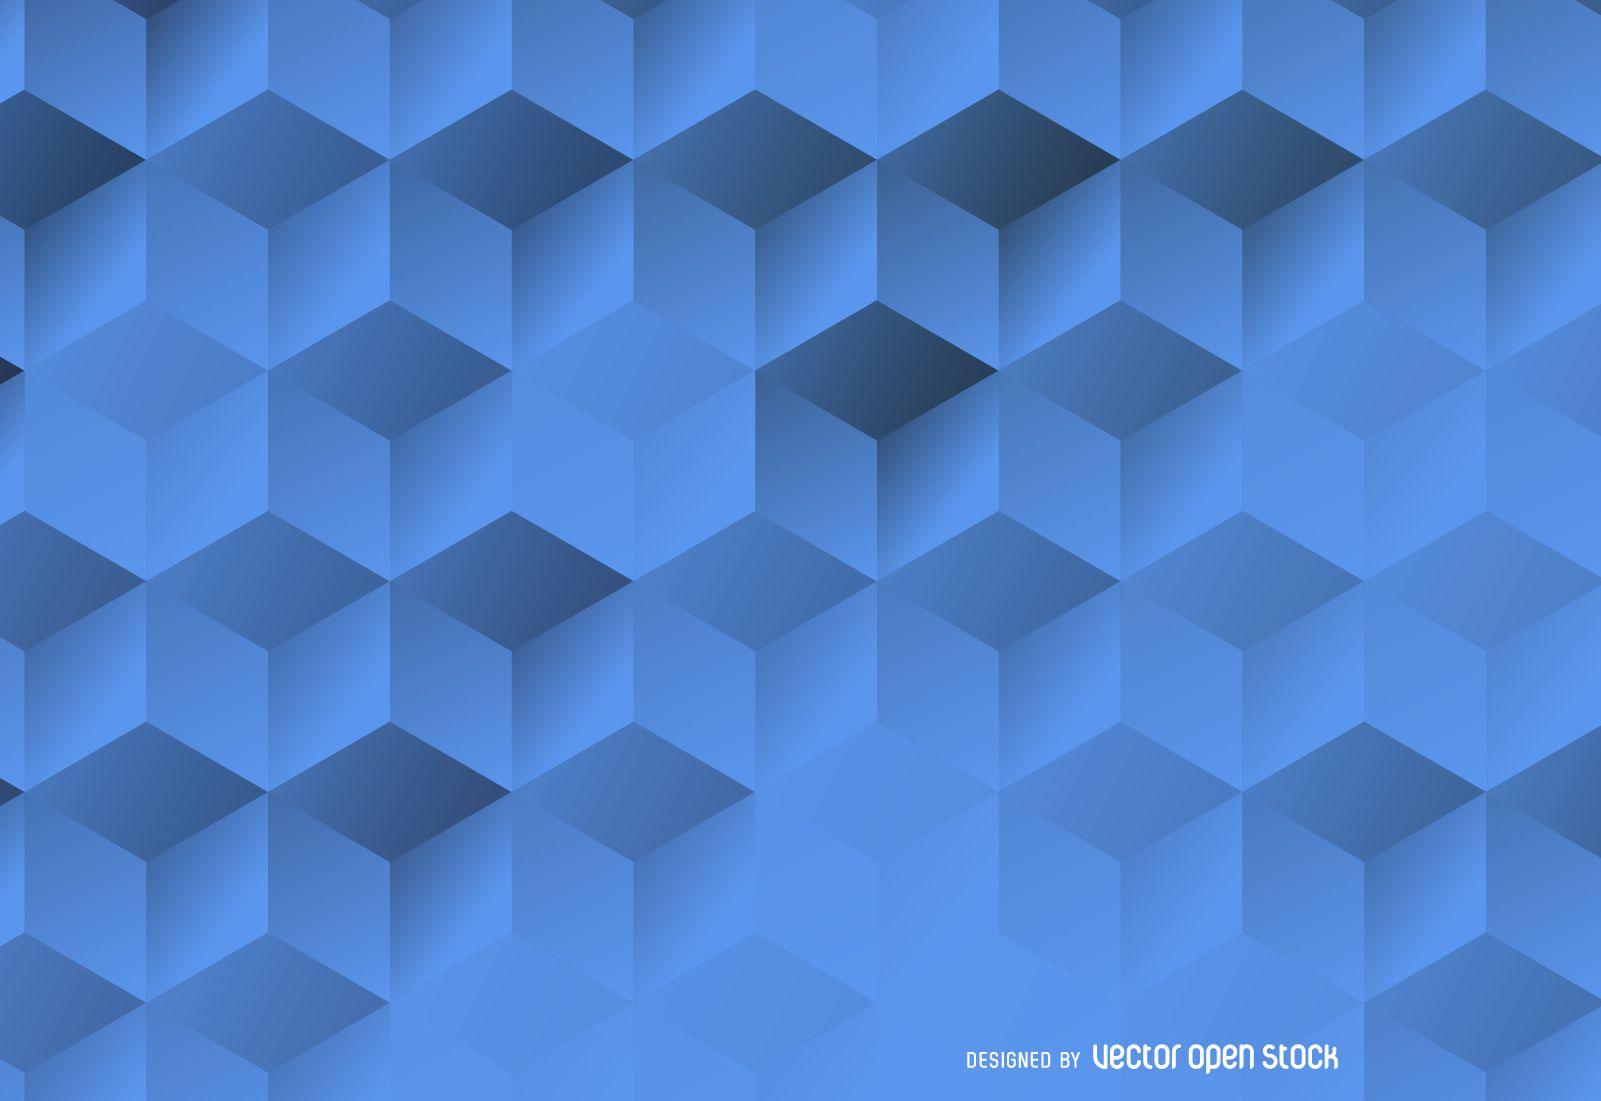 3D hexagonal background